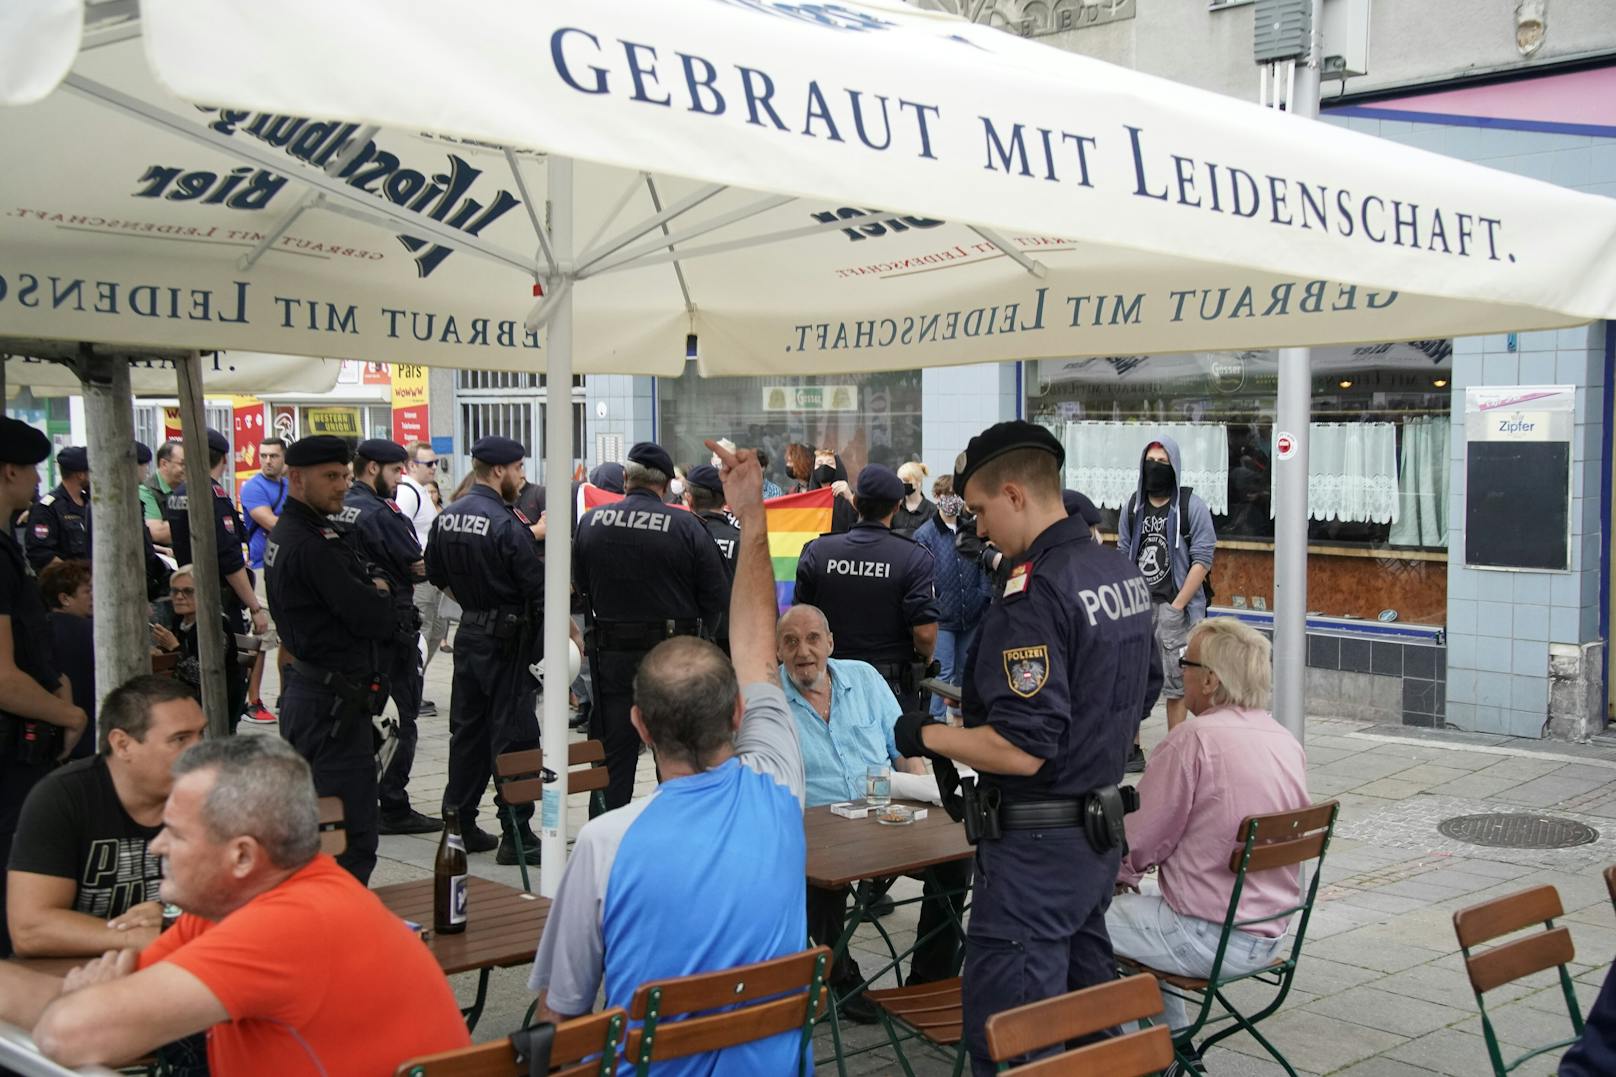 Eine Gruppe mit regenbogenfahnen versuchten, die veranstaltung zu stören. Sie bekamen Polizeischutz - und unflätige Gesten der FPÖ-Fans.